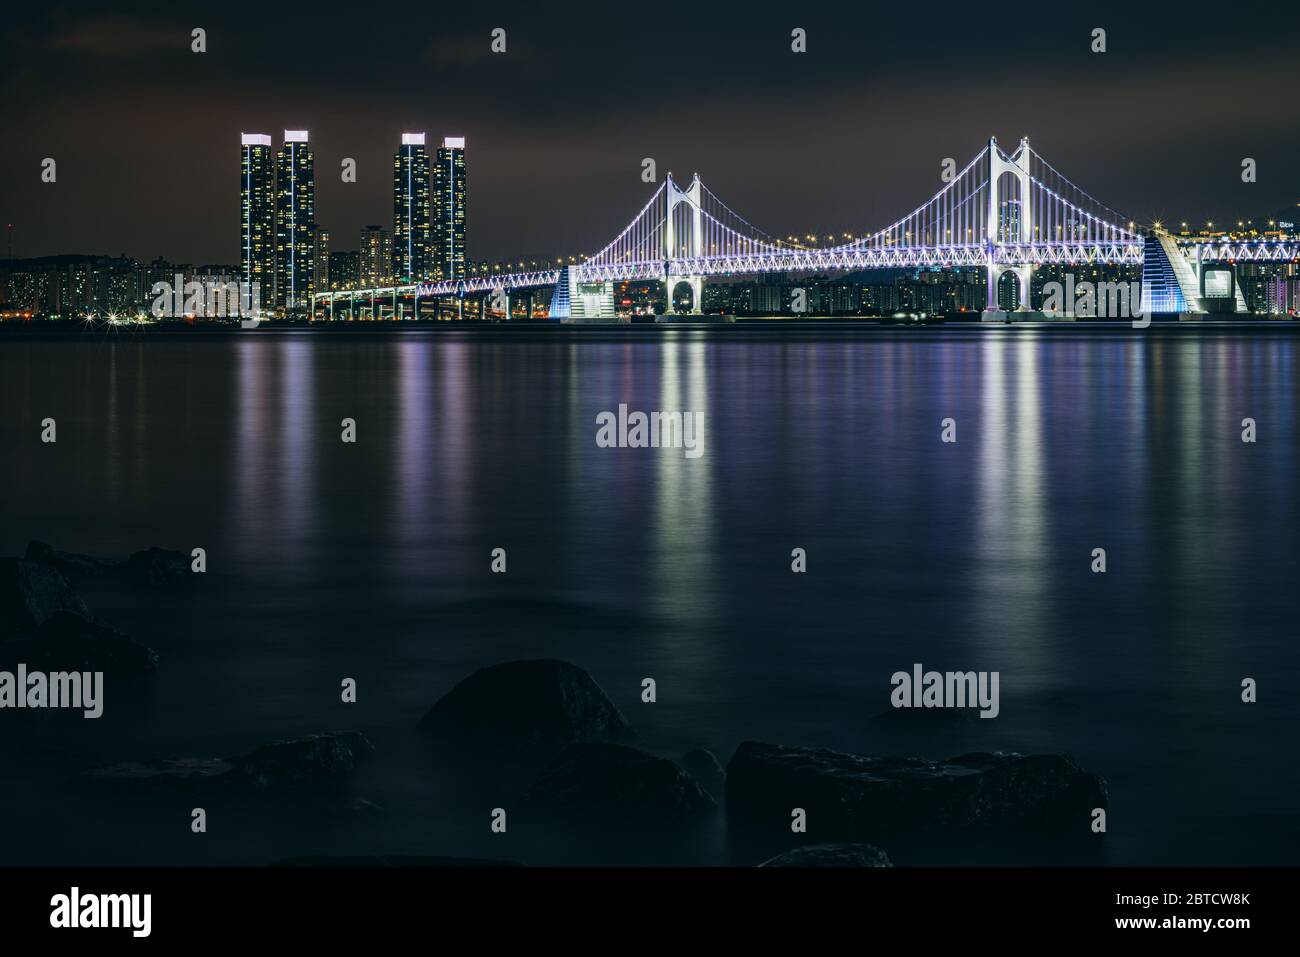 Busan, Corea del Sur - 21 de mayo de 2020: Con la ciudad corriendo hasta el océano y muchos puentes y rascacielos iluminados, Busan ofrece mucho Foto de stock